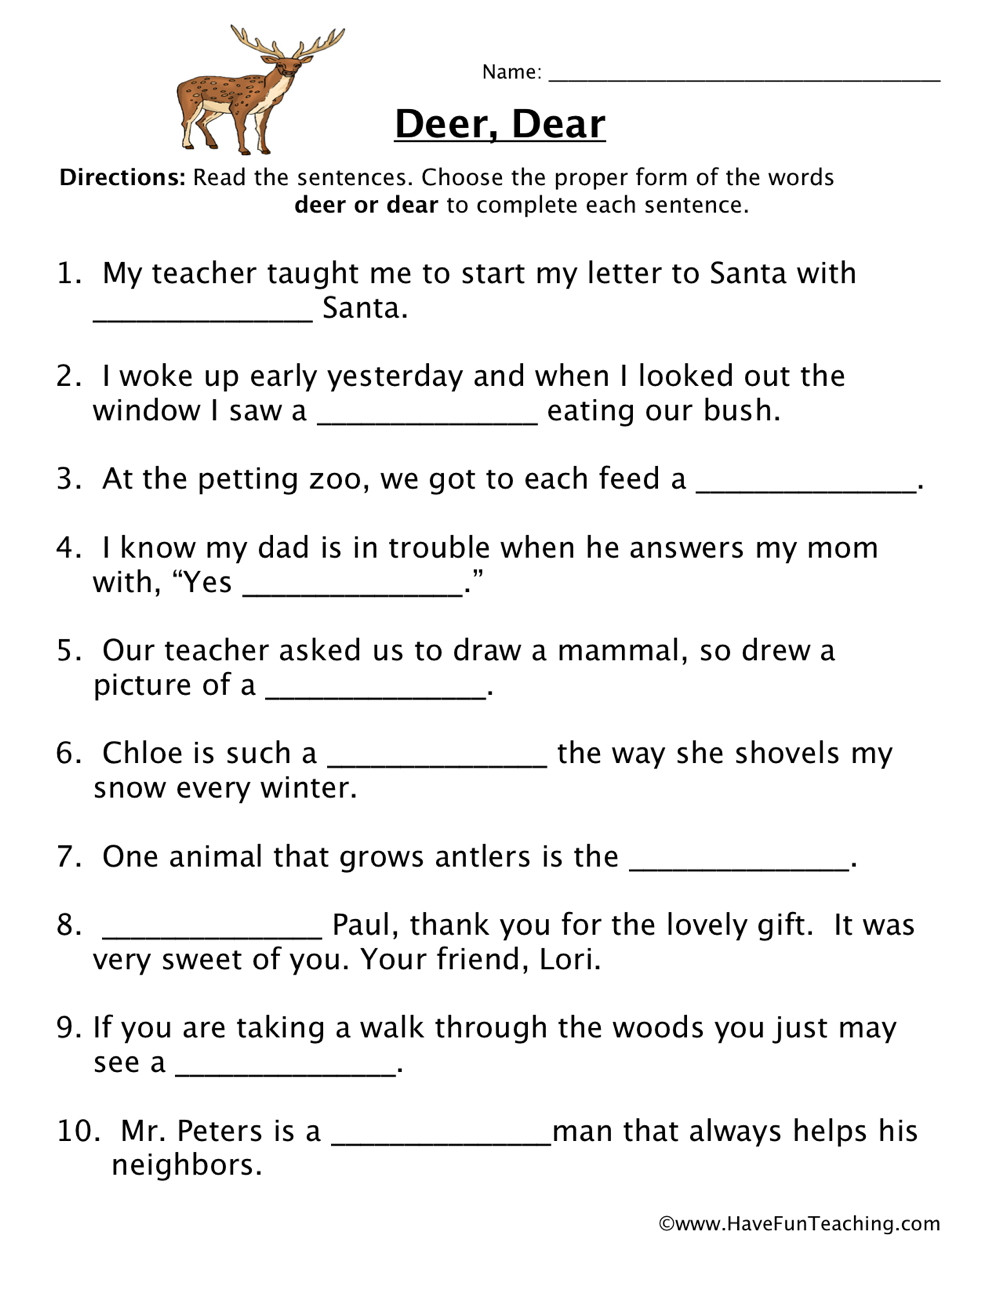 Homophone Worksheets 5th Grade Deer Dear Homophones Worksheet